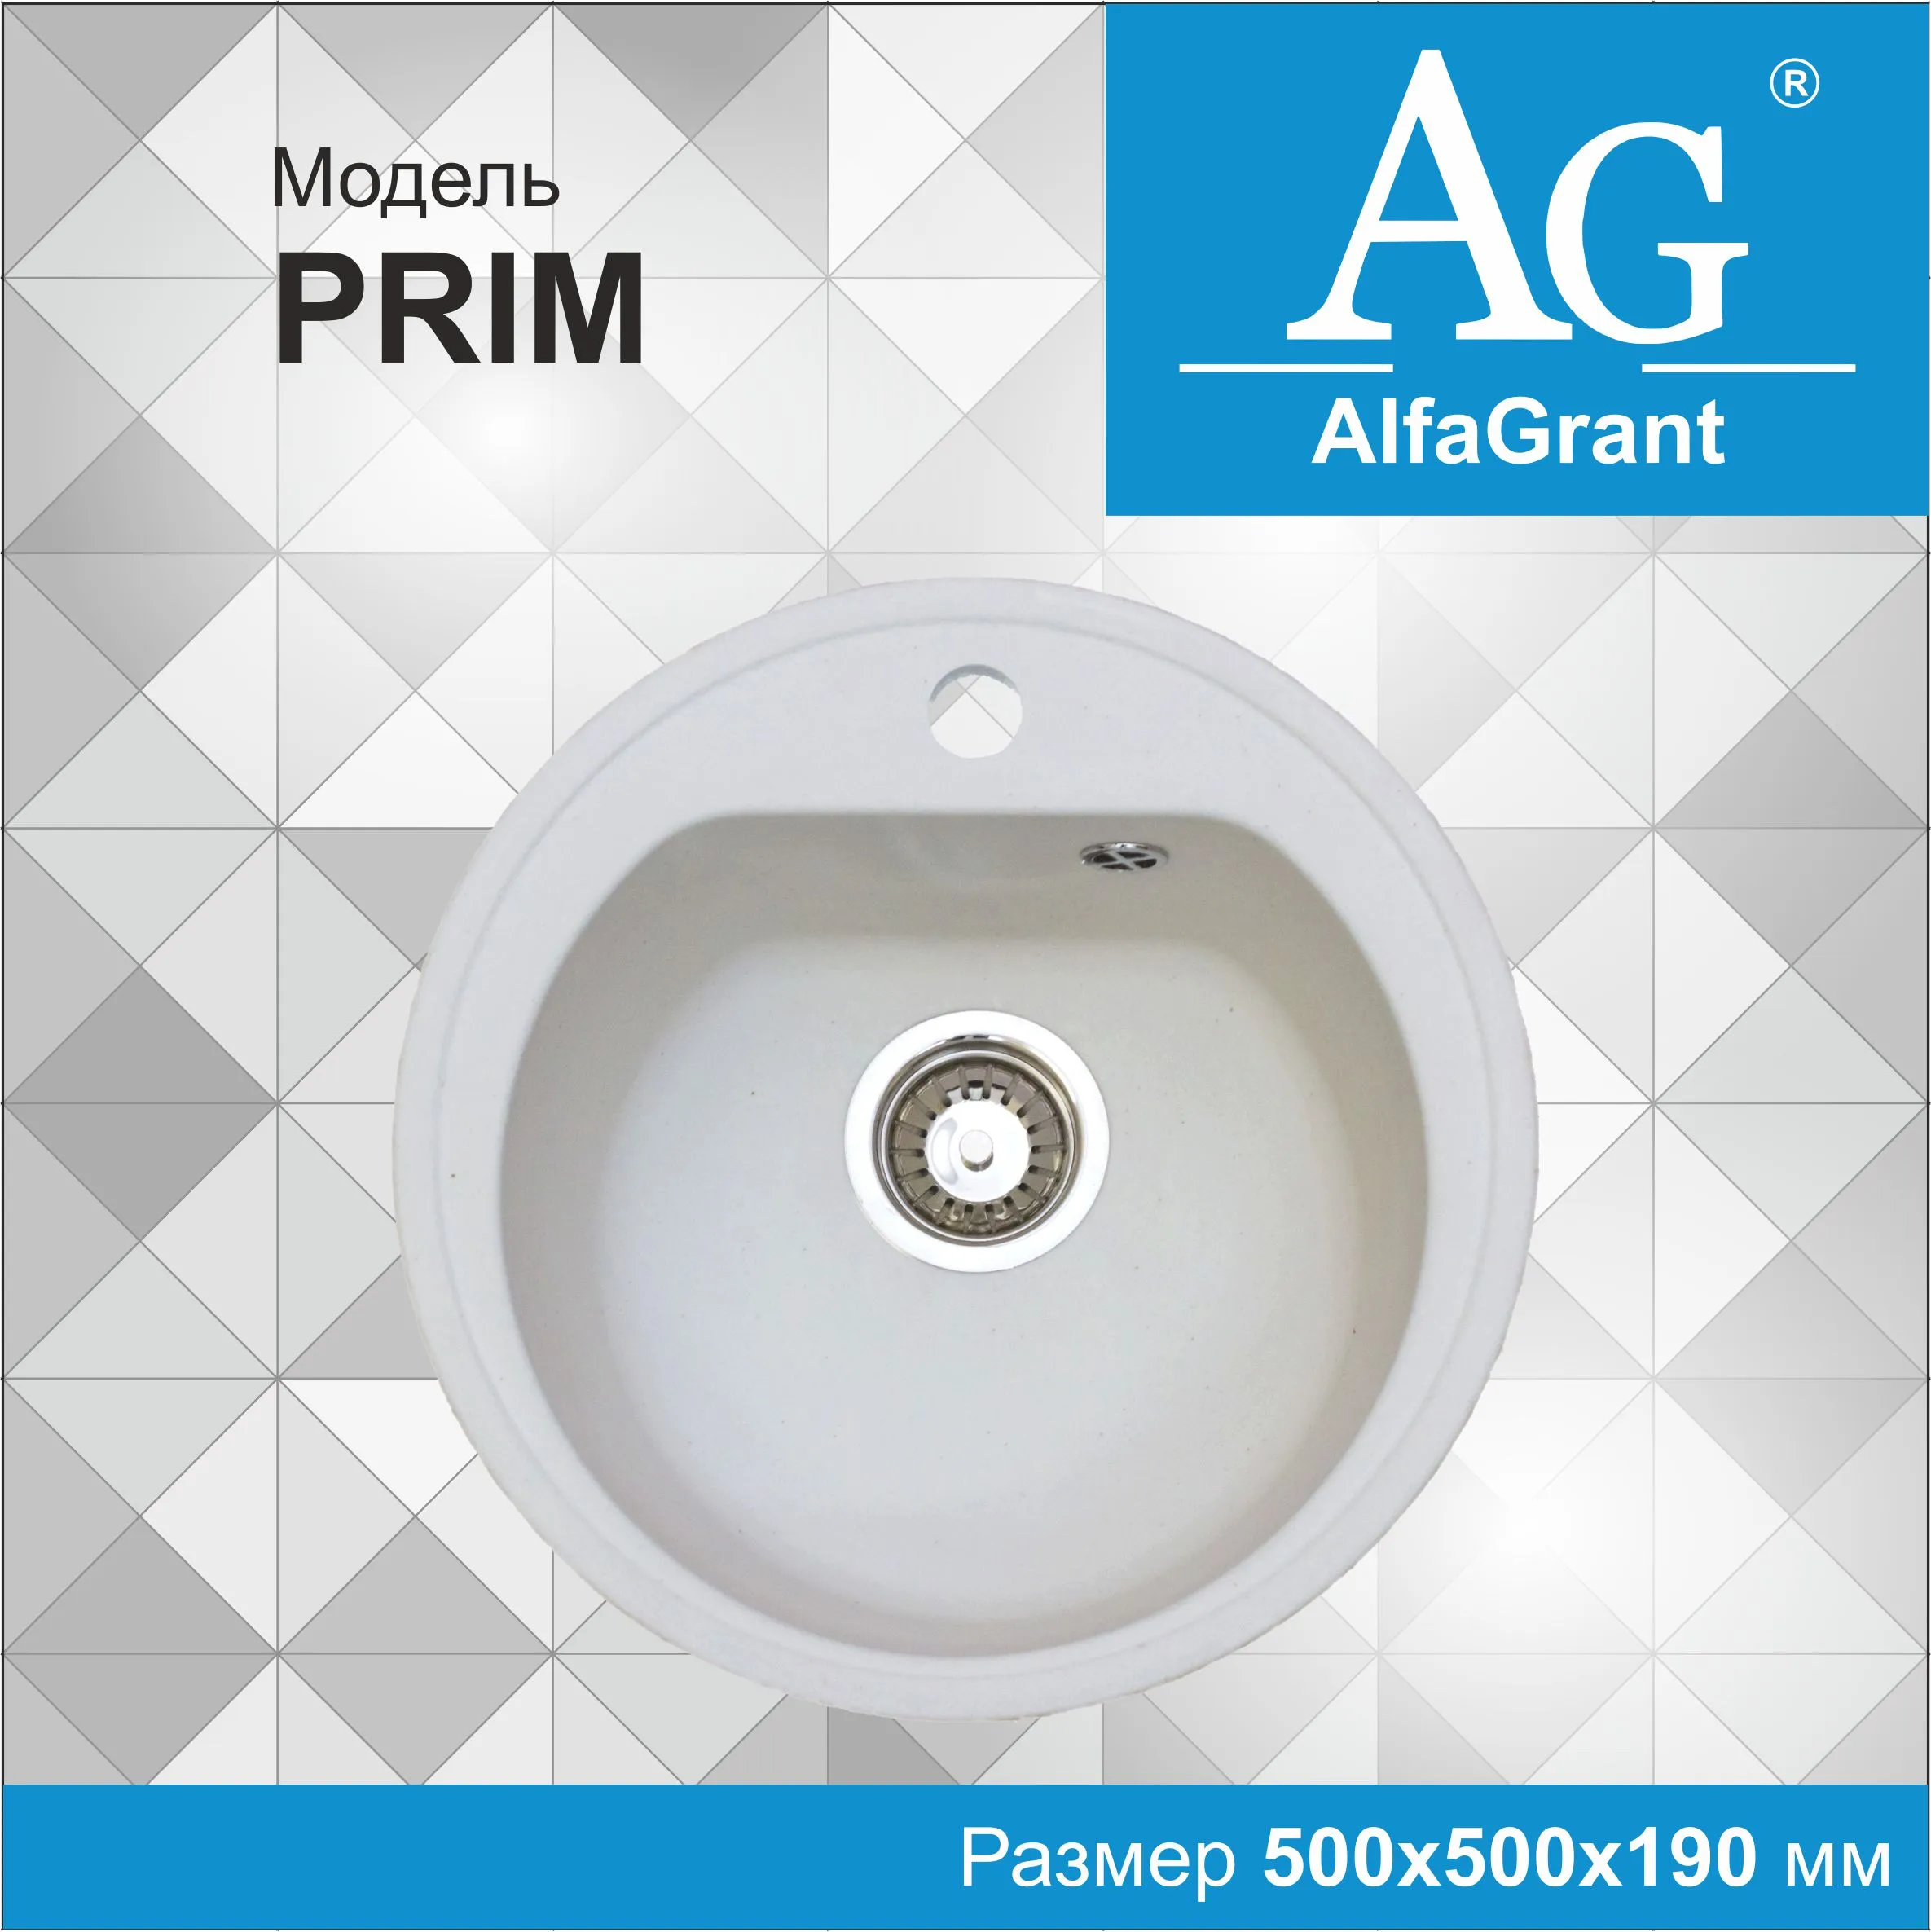 Кухонная мойка AlfaGrant модель PRIM (AG-001).#1